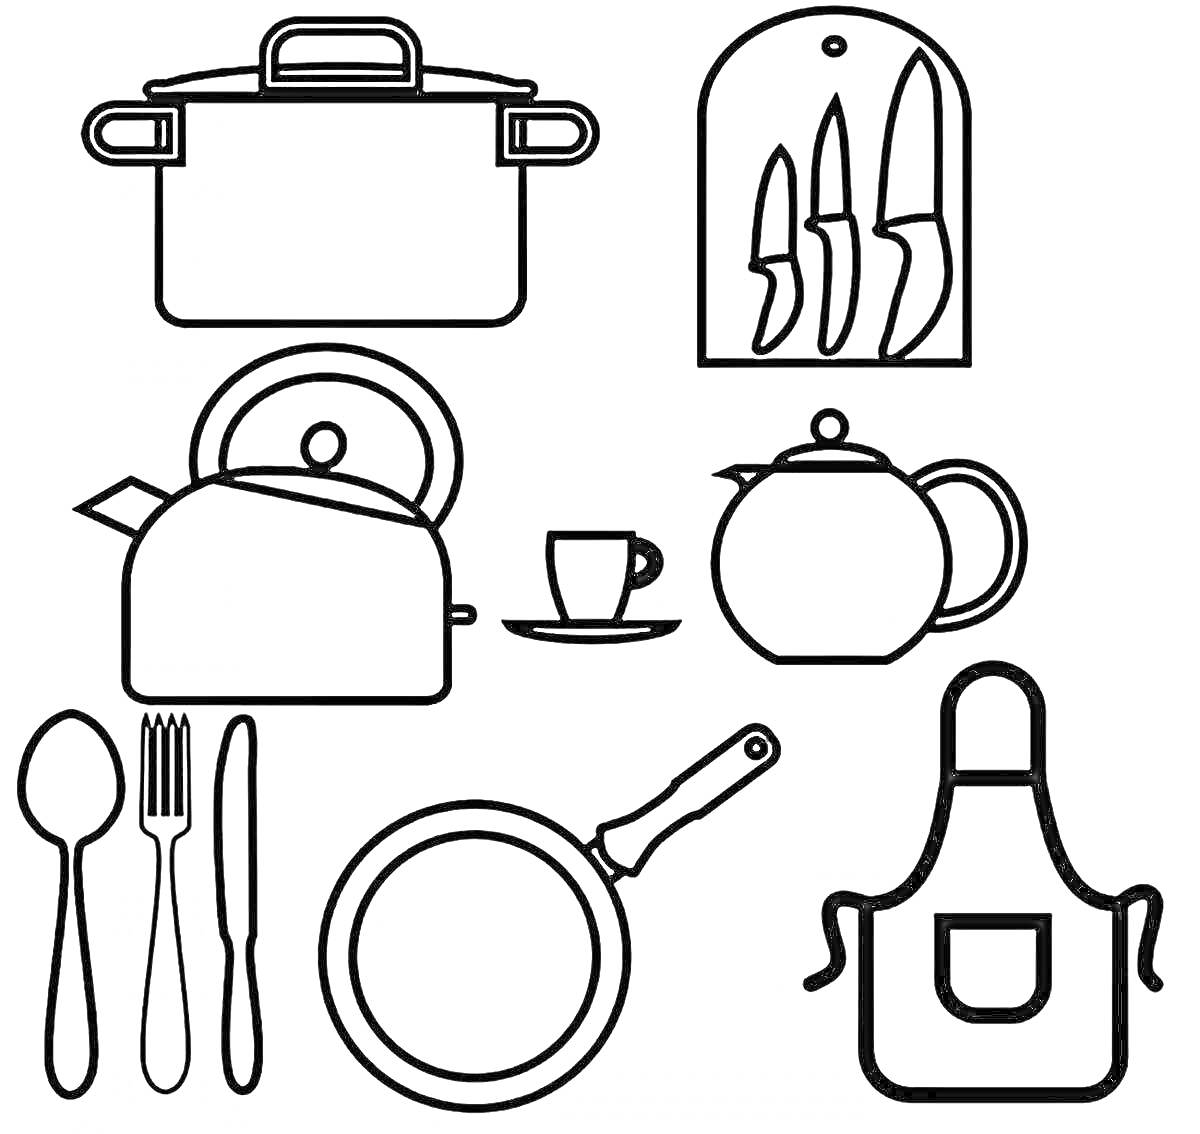 Раскраска Кухонная утварь: кастрюля, разделочная доска с ножами, чайник, чашка с блюдцем, заварочный чайник, столовые приборы, сковорода, фартук